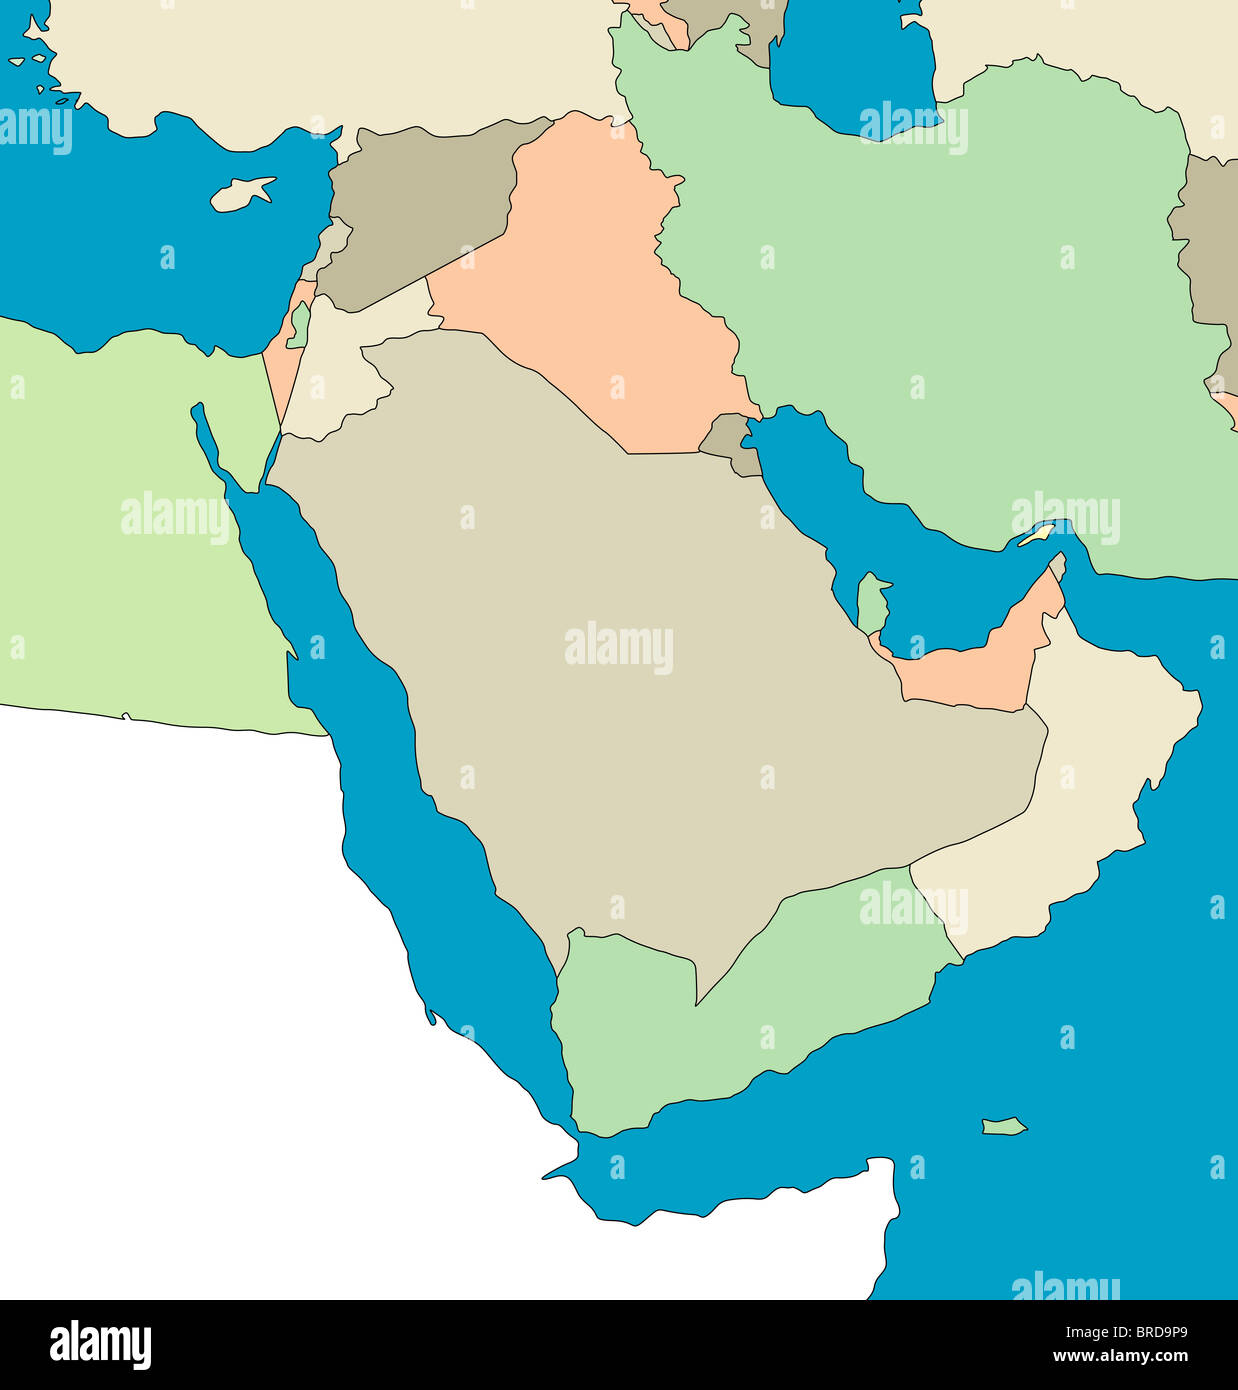 Carte stylisée de la région du Moyen-Orient. pas de sous-titres. Le tout sur fond blanc. Banque D'Images